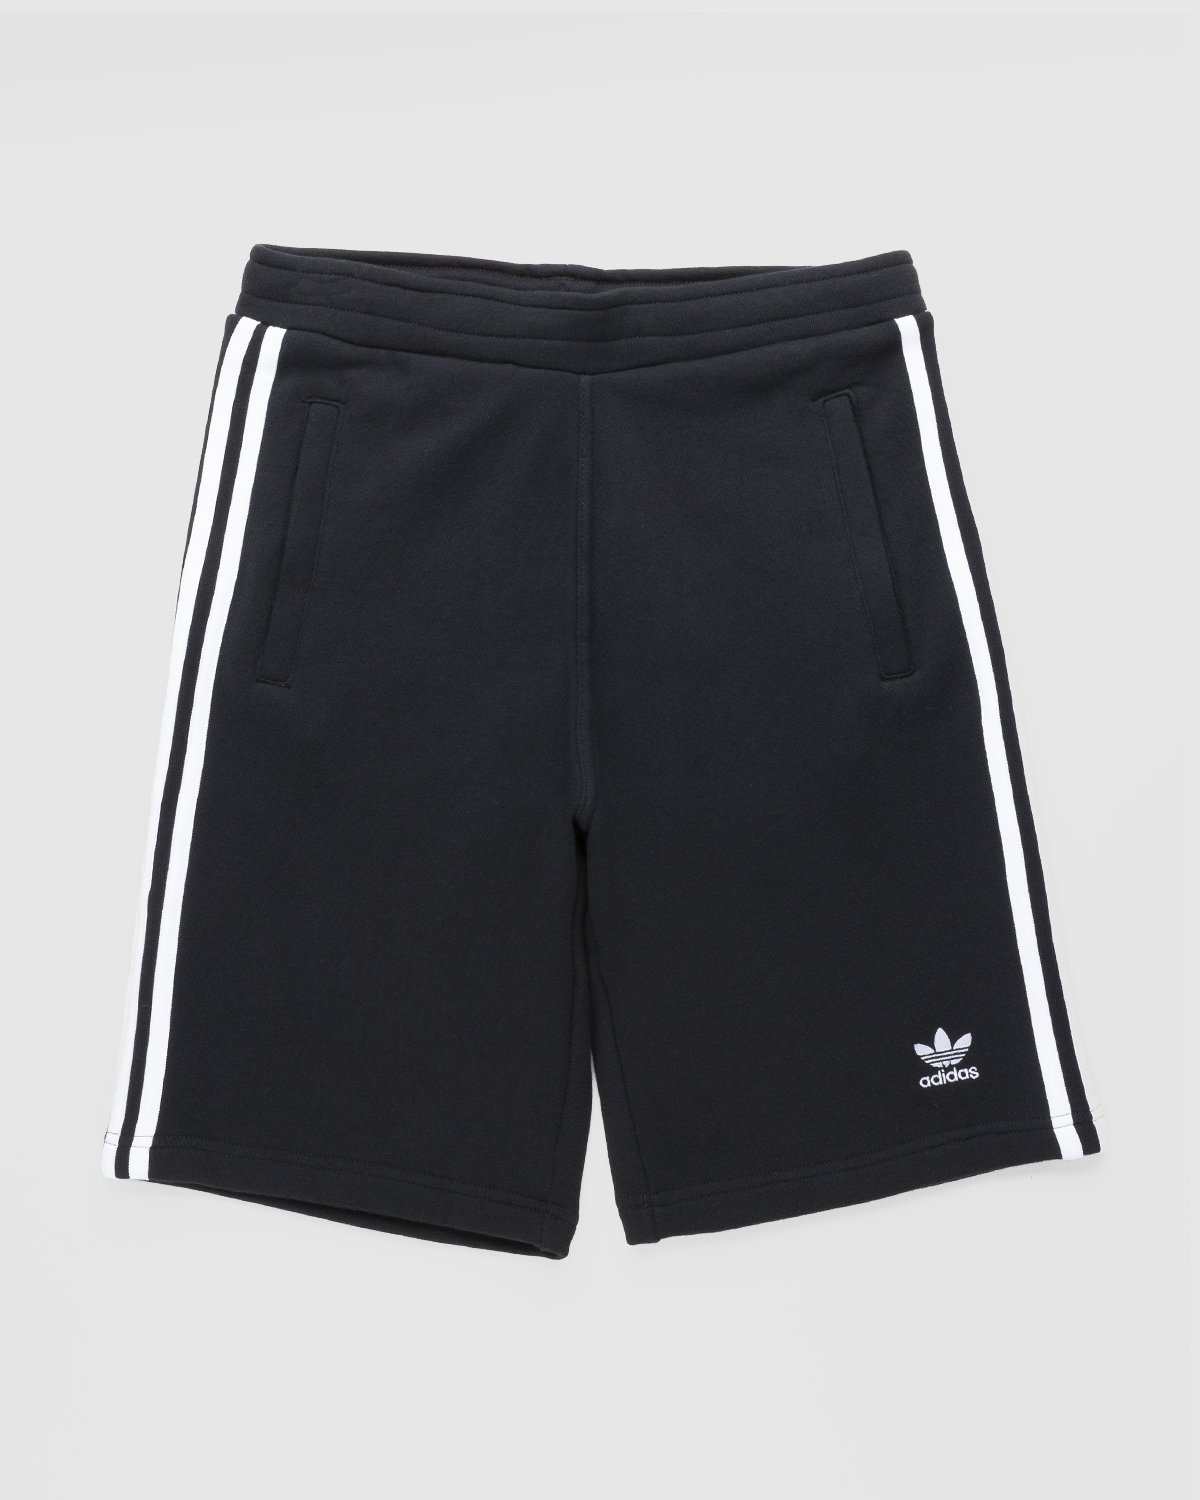 Adidas - 3 Stripe Short Black - Clothing - Black - Image 1